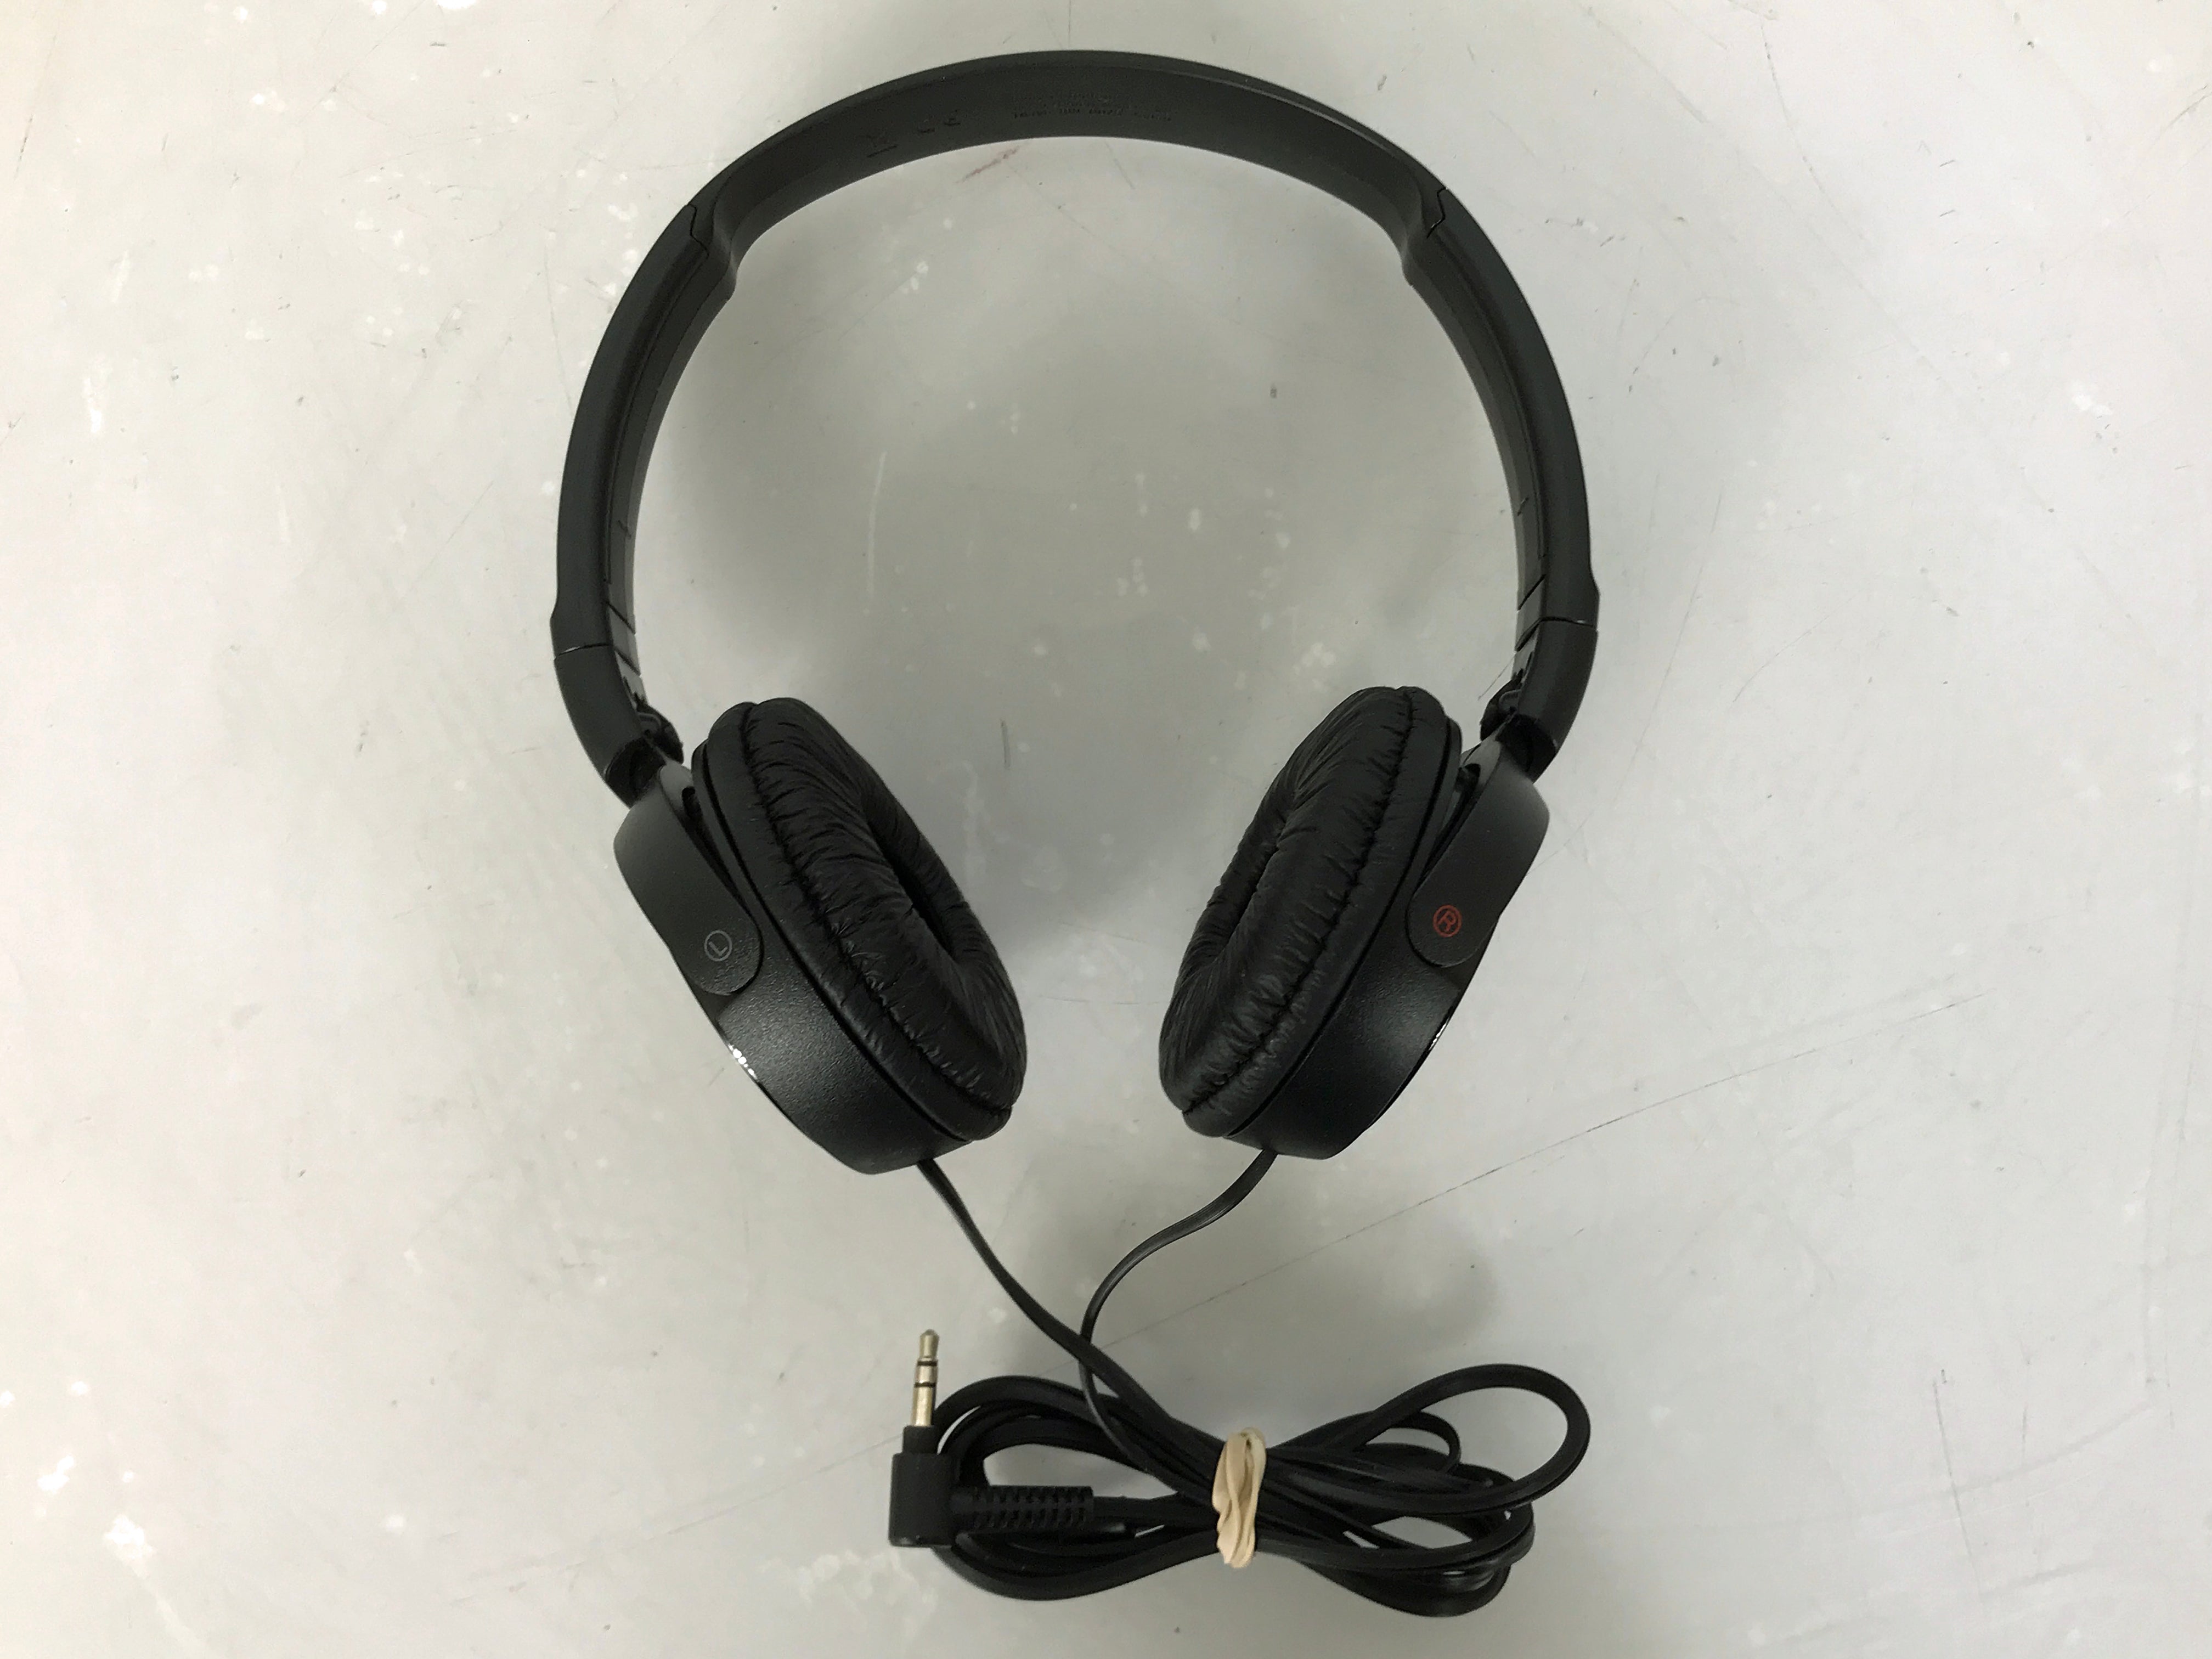 Sony On-Ear Stereo Headphones